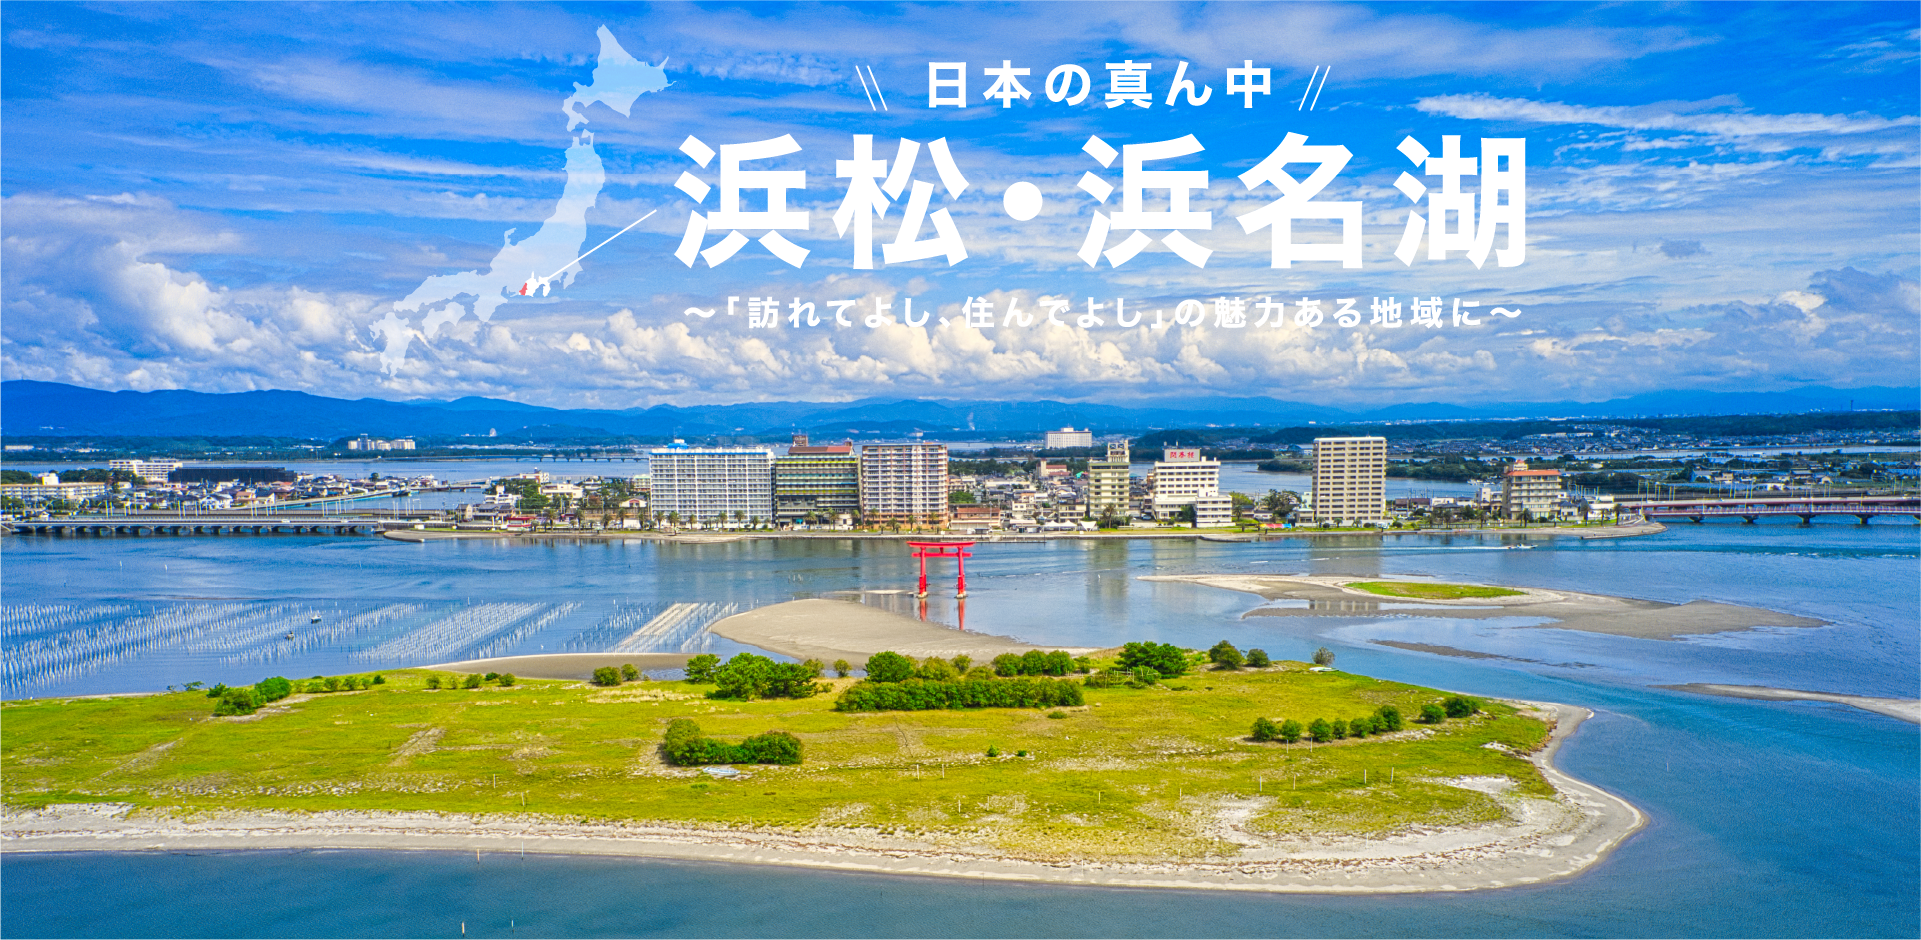 日本の真ん中・浜松・浜名湖～「訪れてよし、住んでよし」の魅力ある地域に～